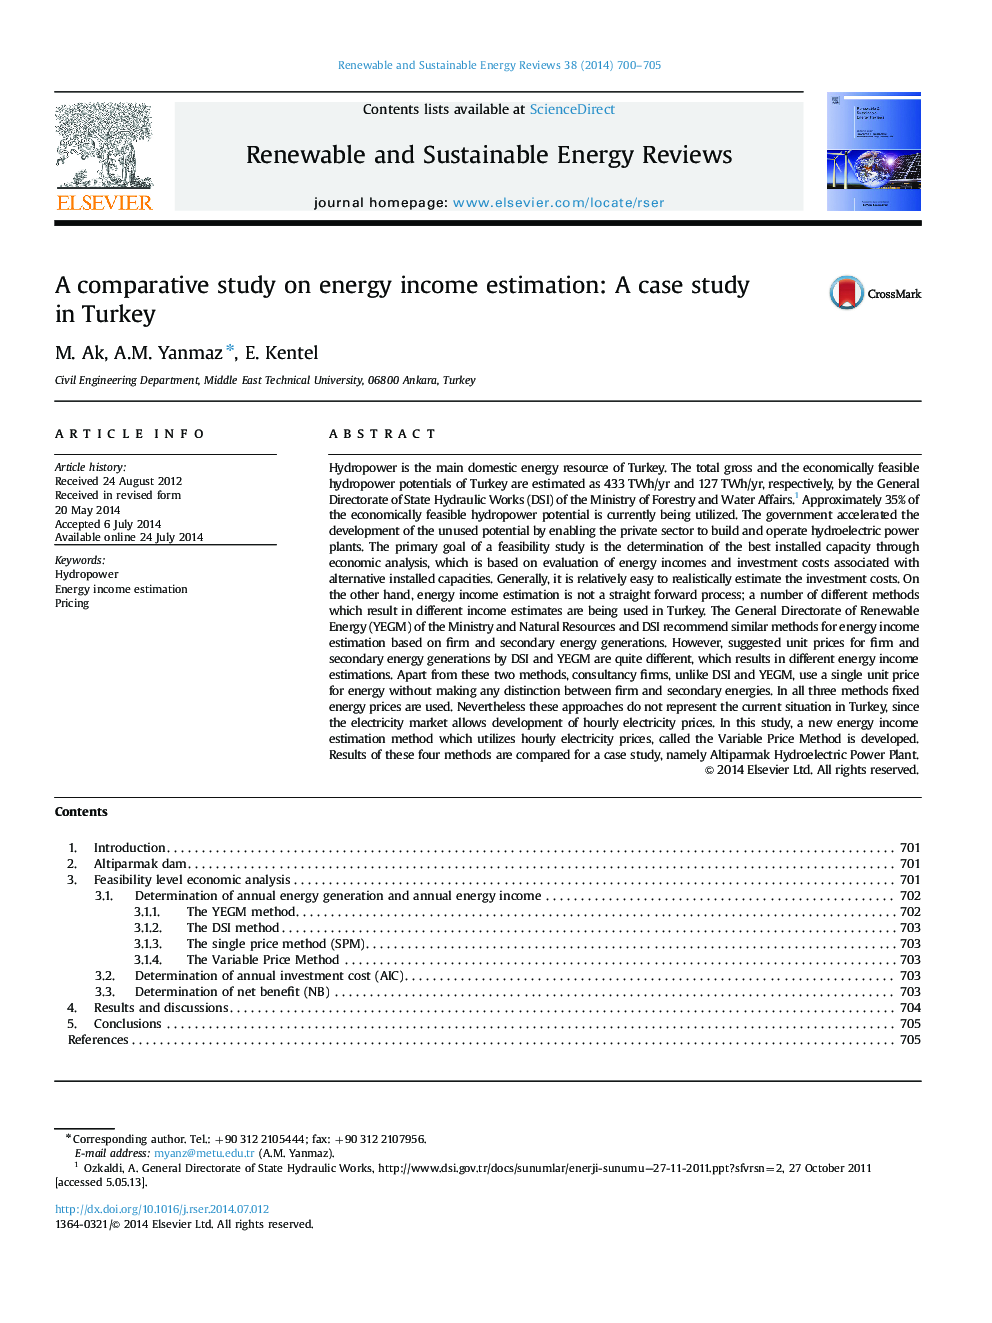 یک مطالعه تطبیقی ​​برآورد درآمد انرژی: مطالعه موردی در ترکیه 